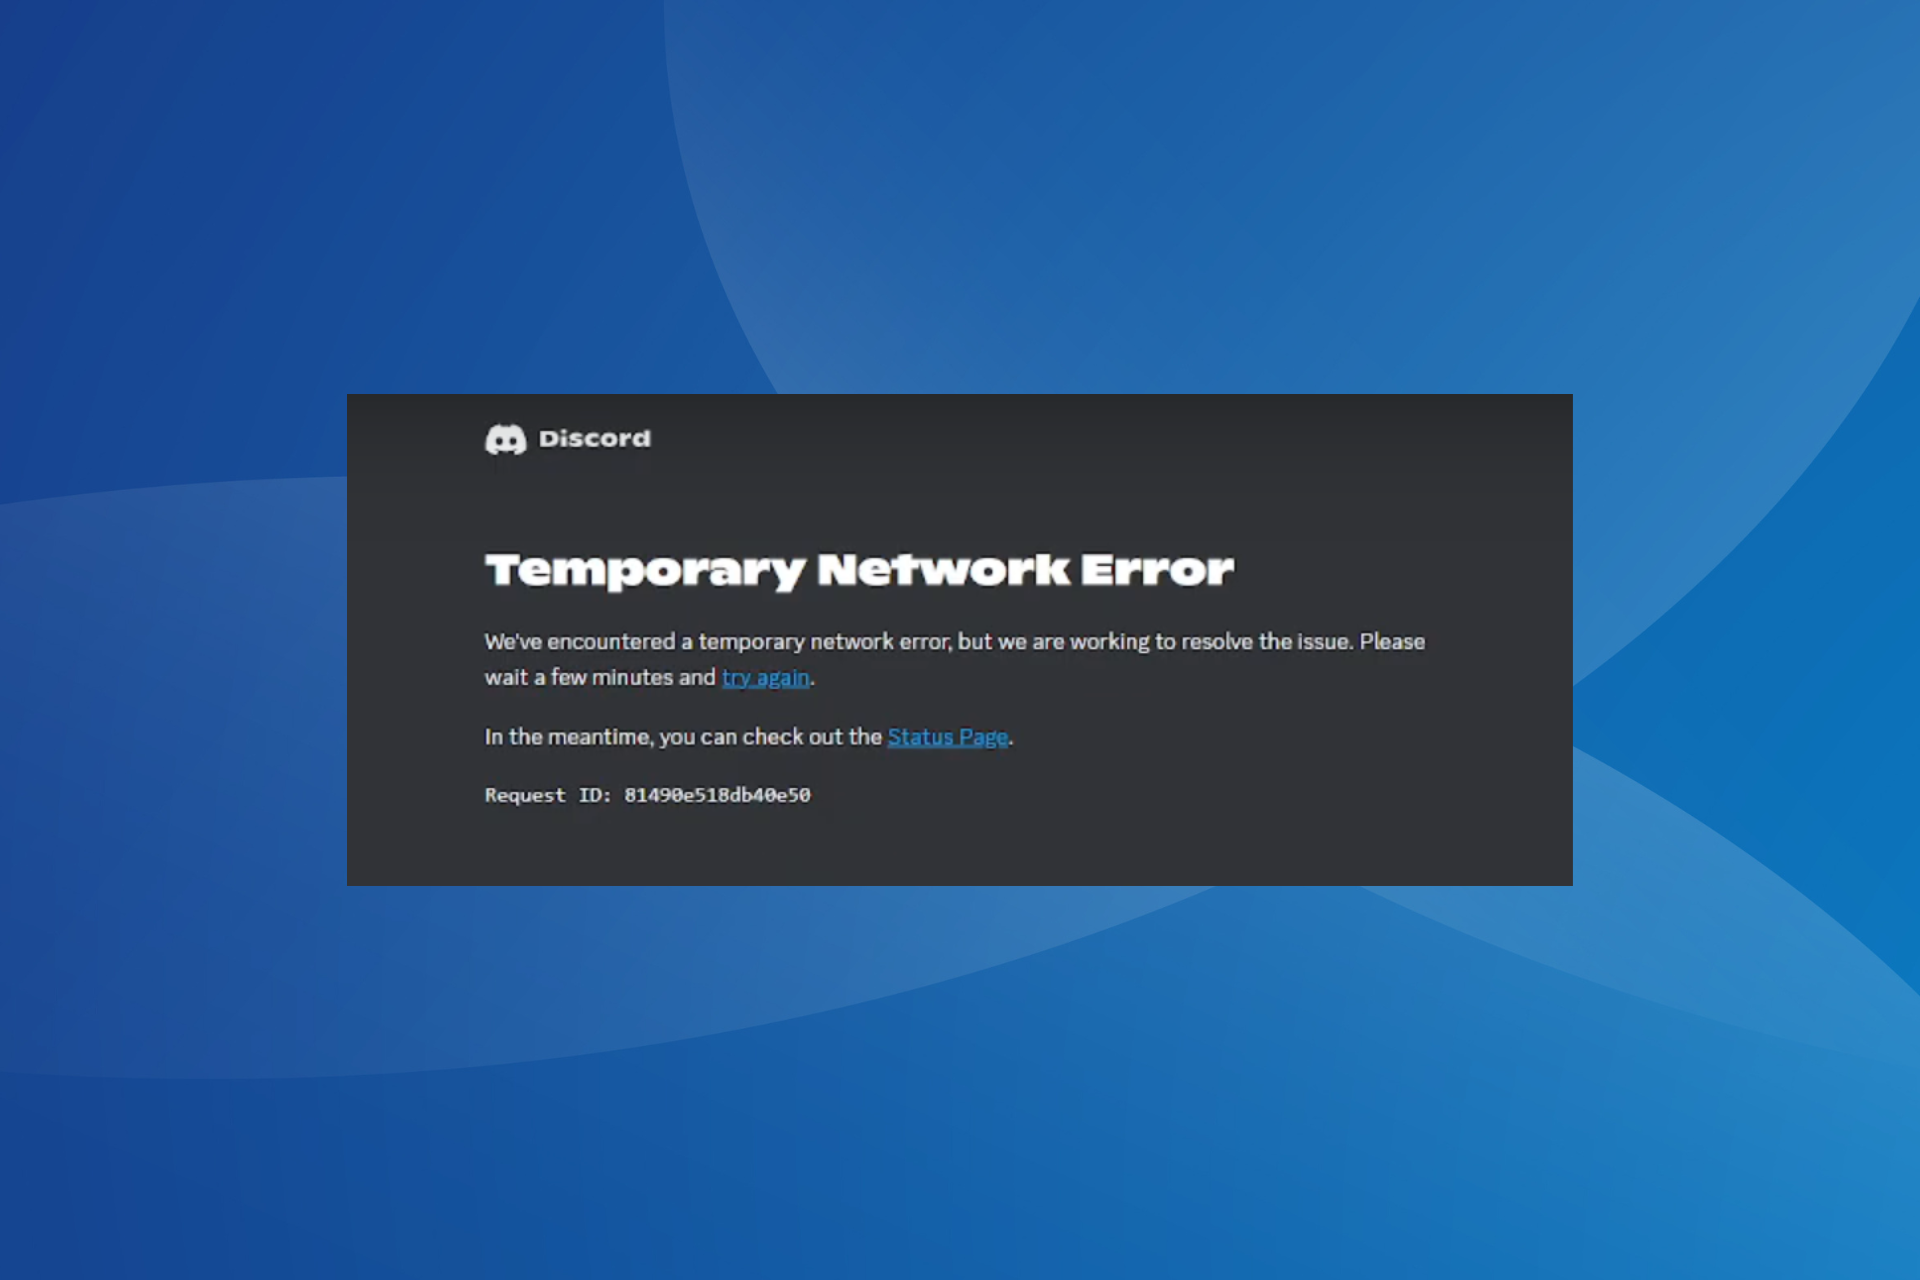 fix discord temporary network error